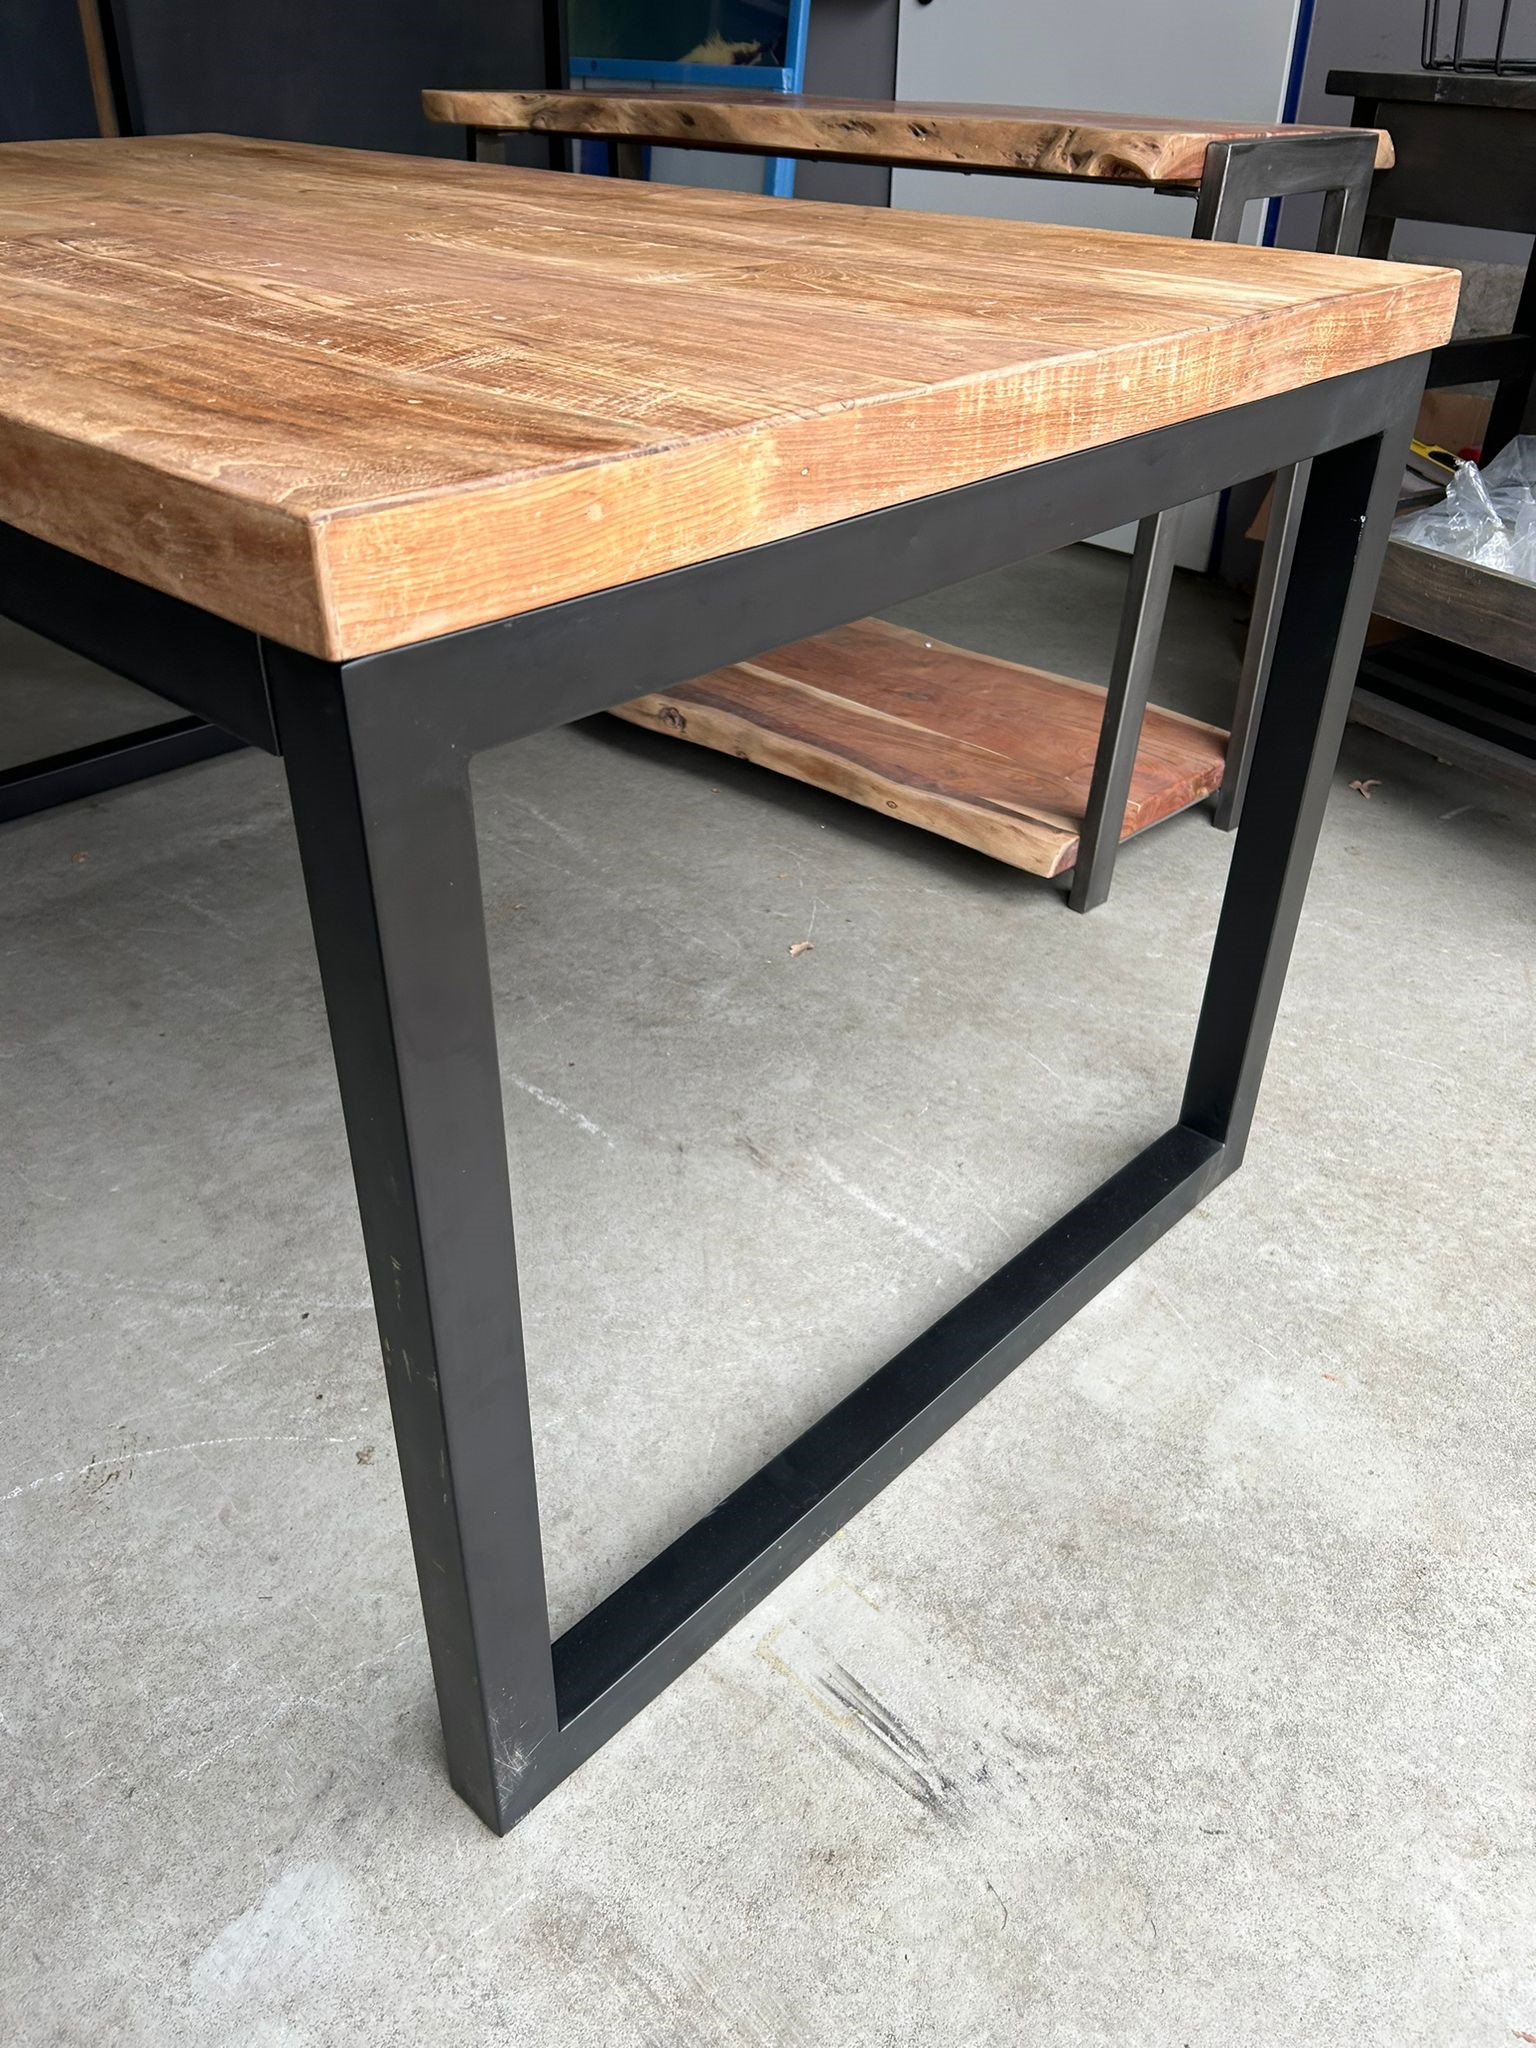 Schatting geweten Dwang Industriële tafel - hout - zwart metalen frame - 160 x 90 cm -  HANDGEMAAKT.EU